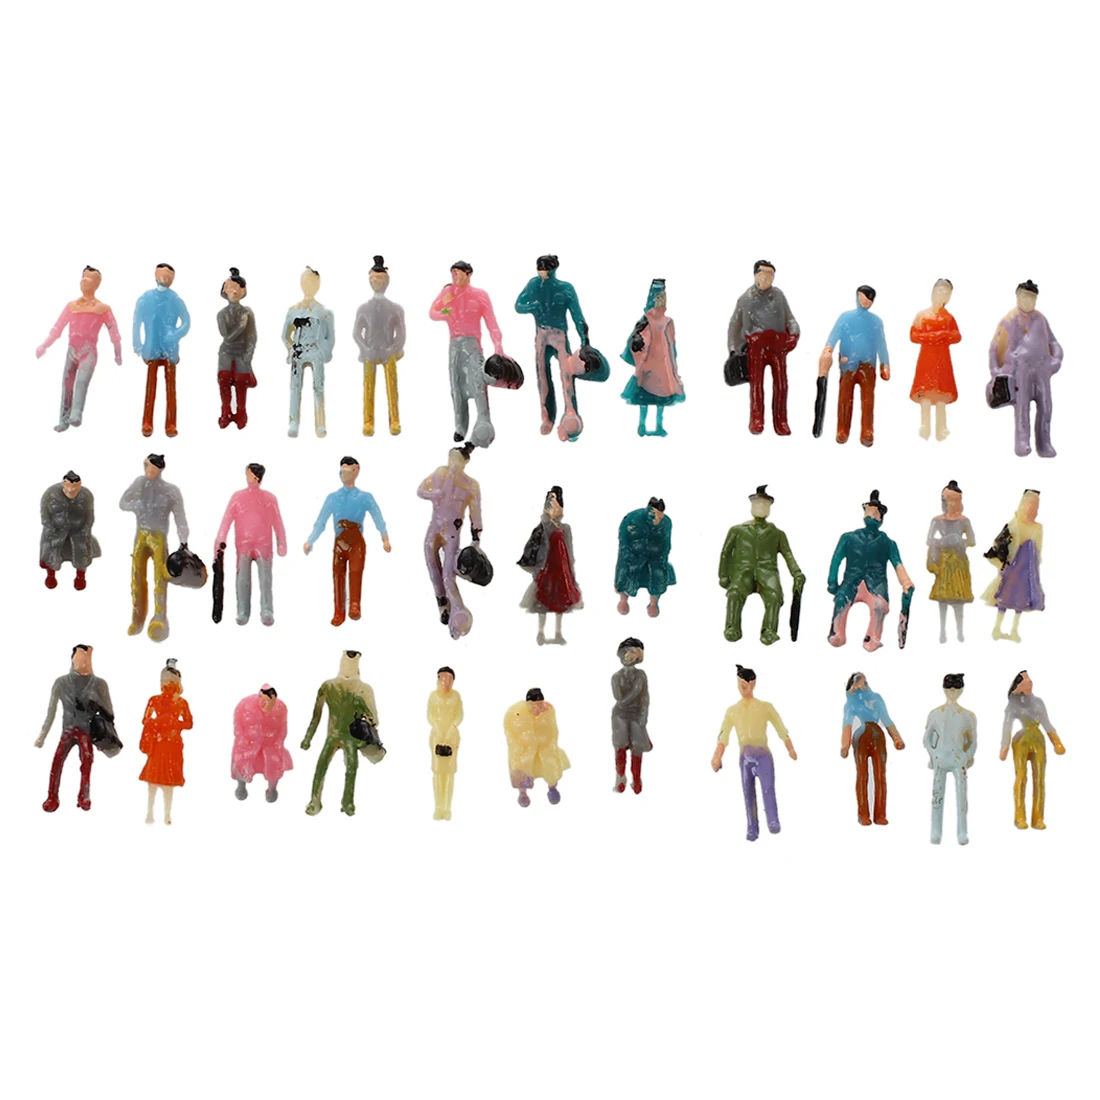 Regalos para Los Amantes del Arte 1 a 150 linjunddd Nuevos 100pcs Pintadas Modelo De Tren La Gente Figuras Escala N 